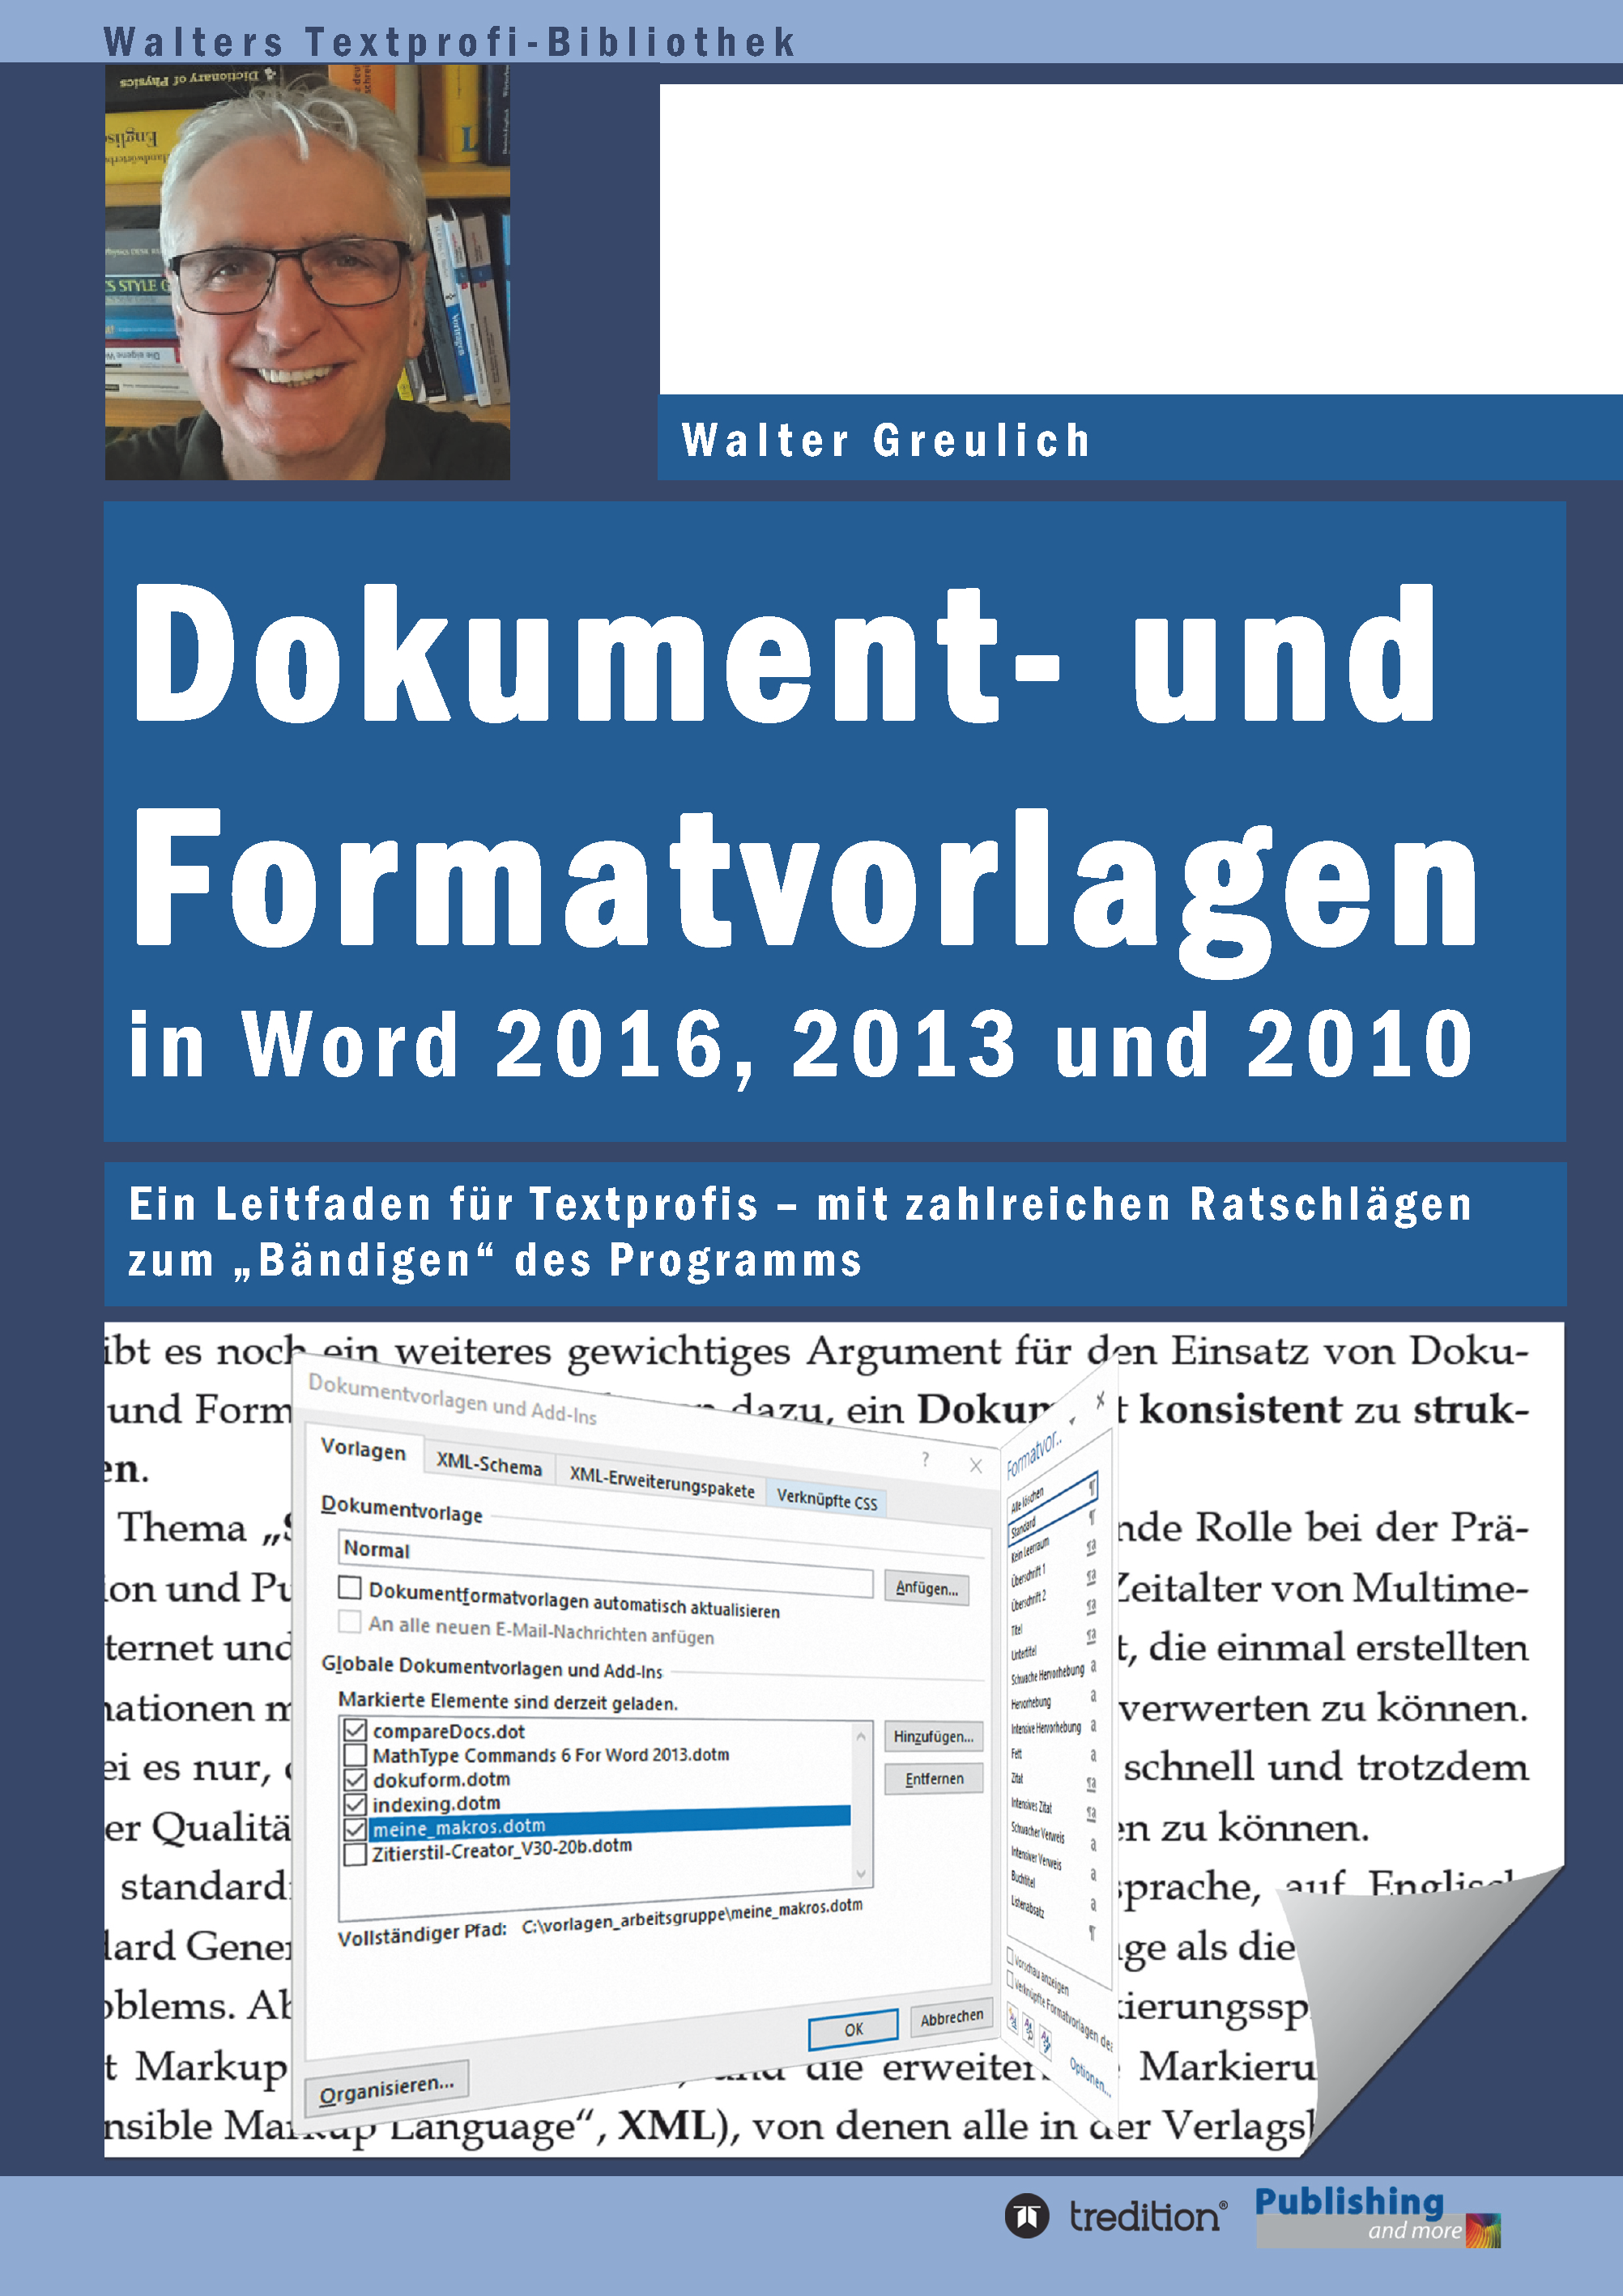 Buch Zu Dokument Und Formatvorlagen Publishing And More